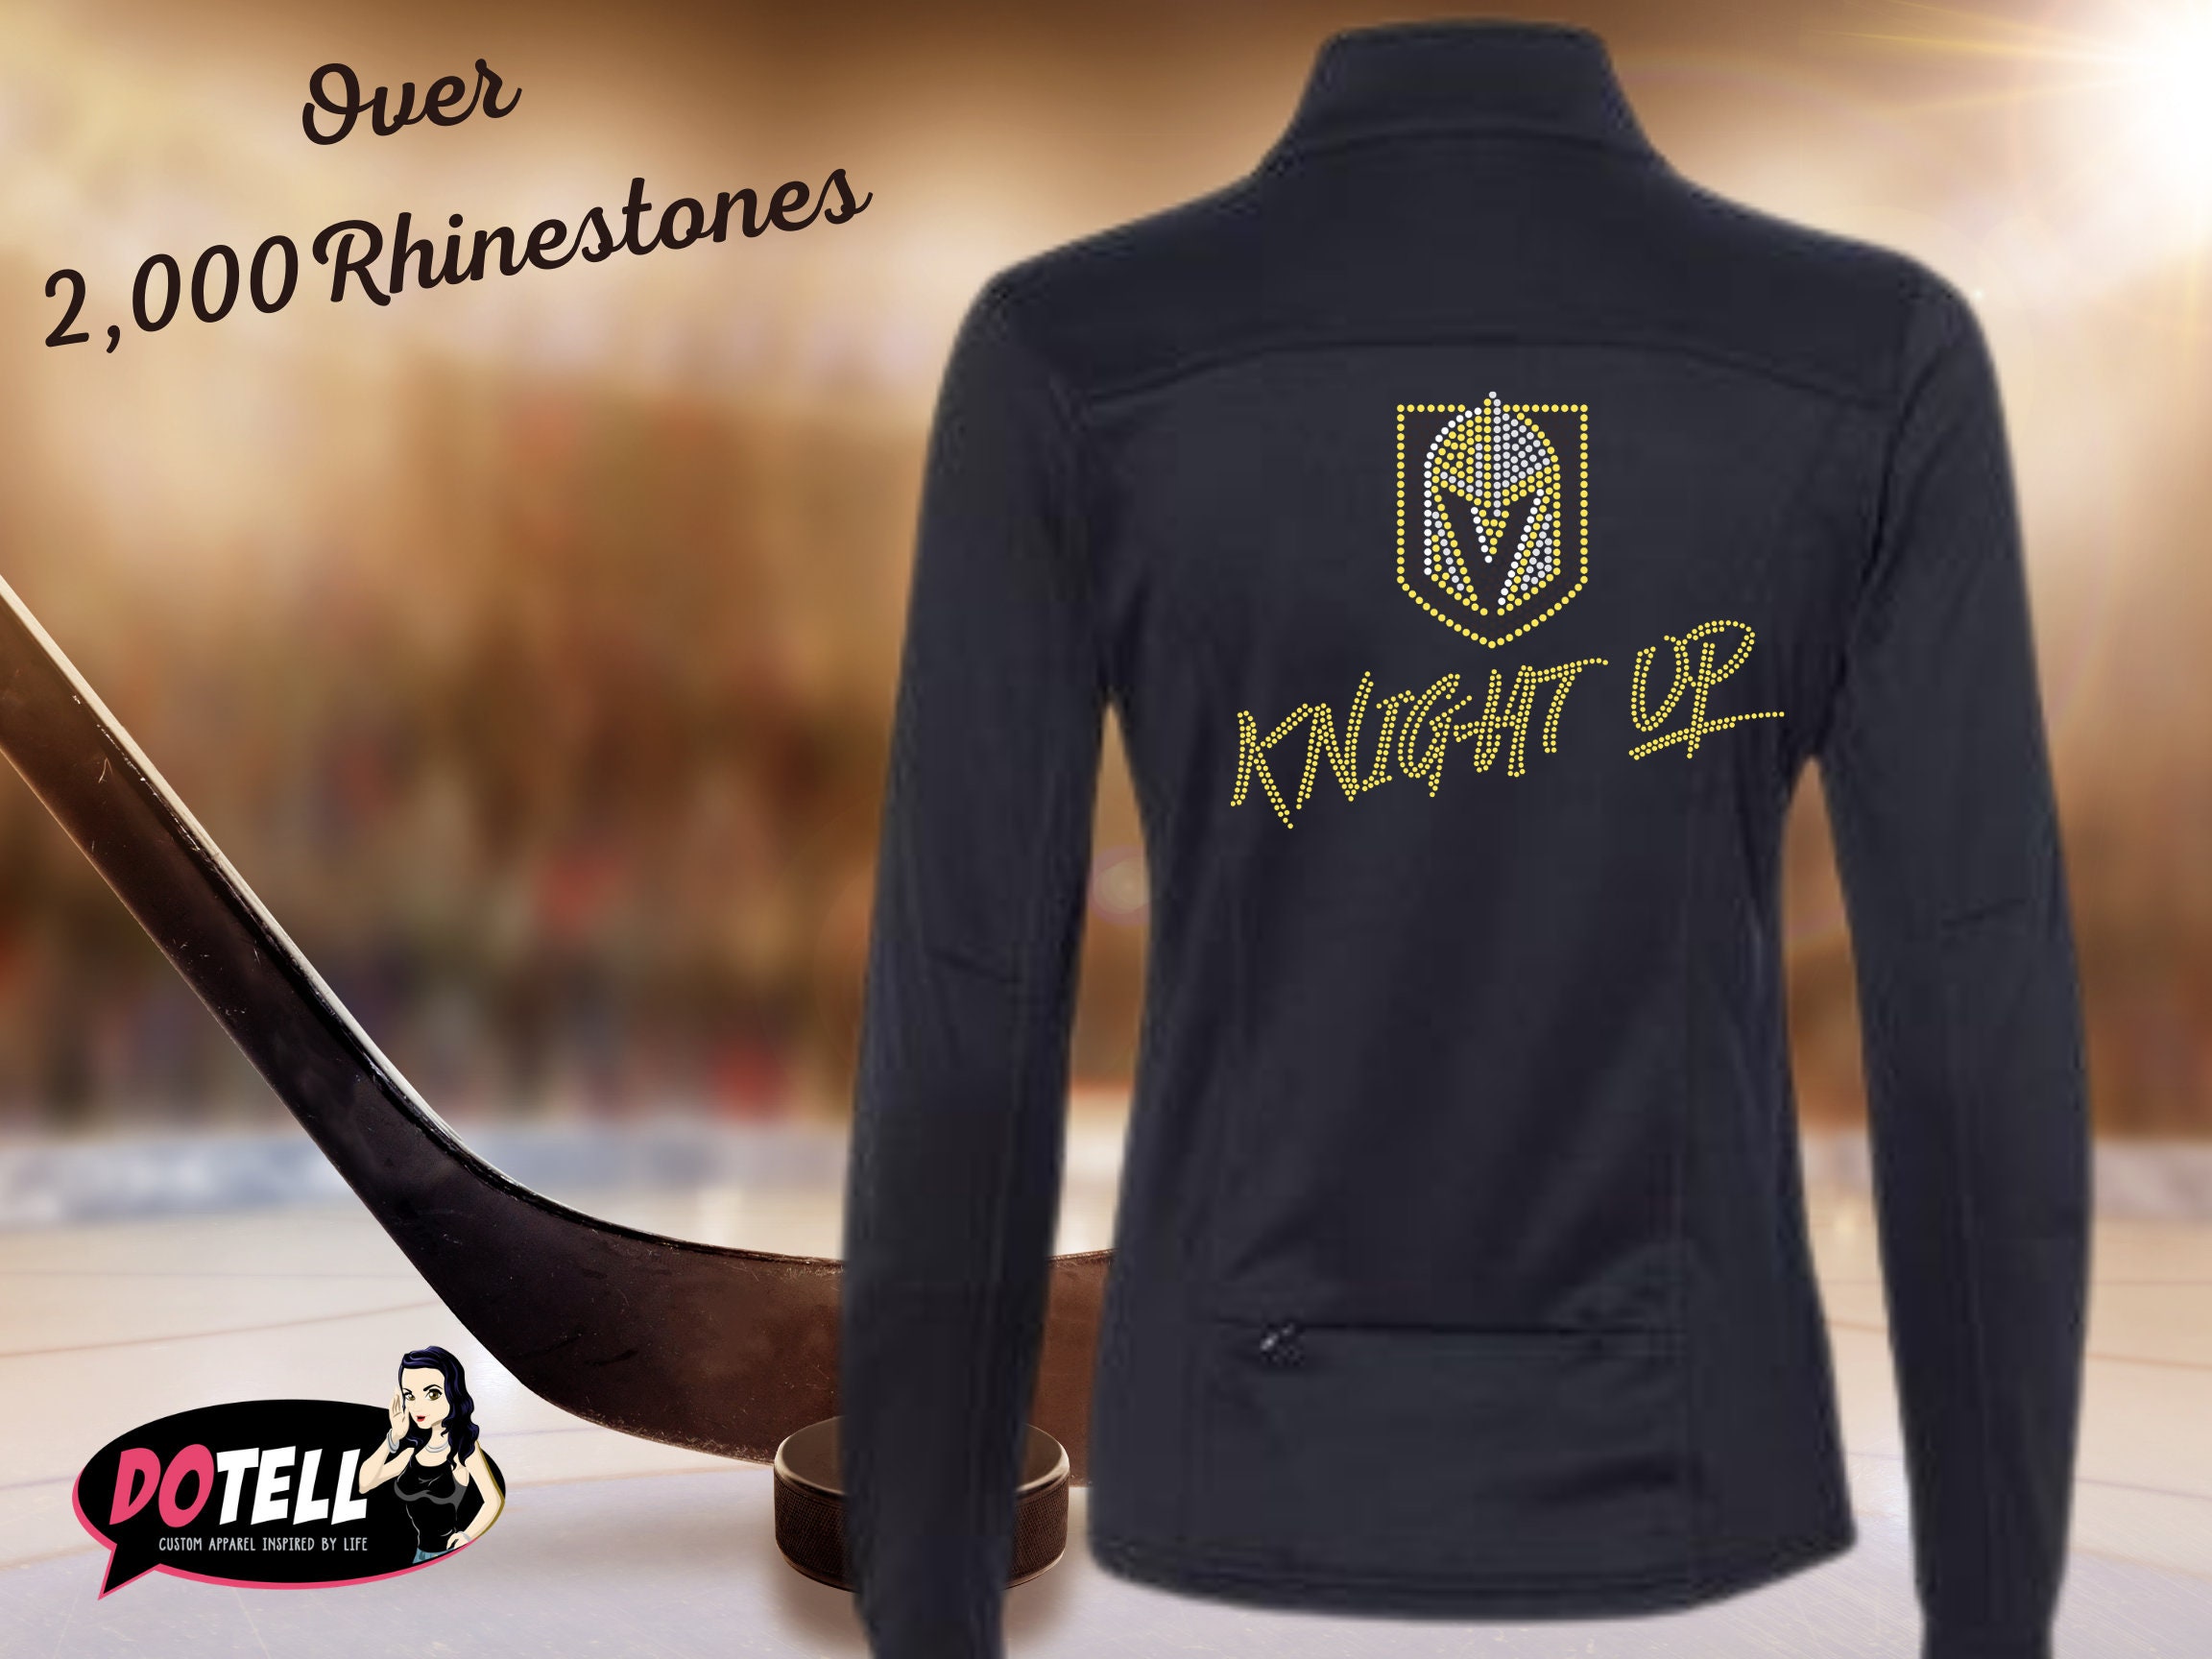 Vegas Golden Knights The Golden Girls Stay Golden Knights shirt, hoodie